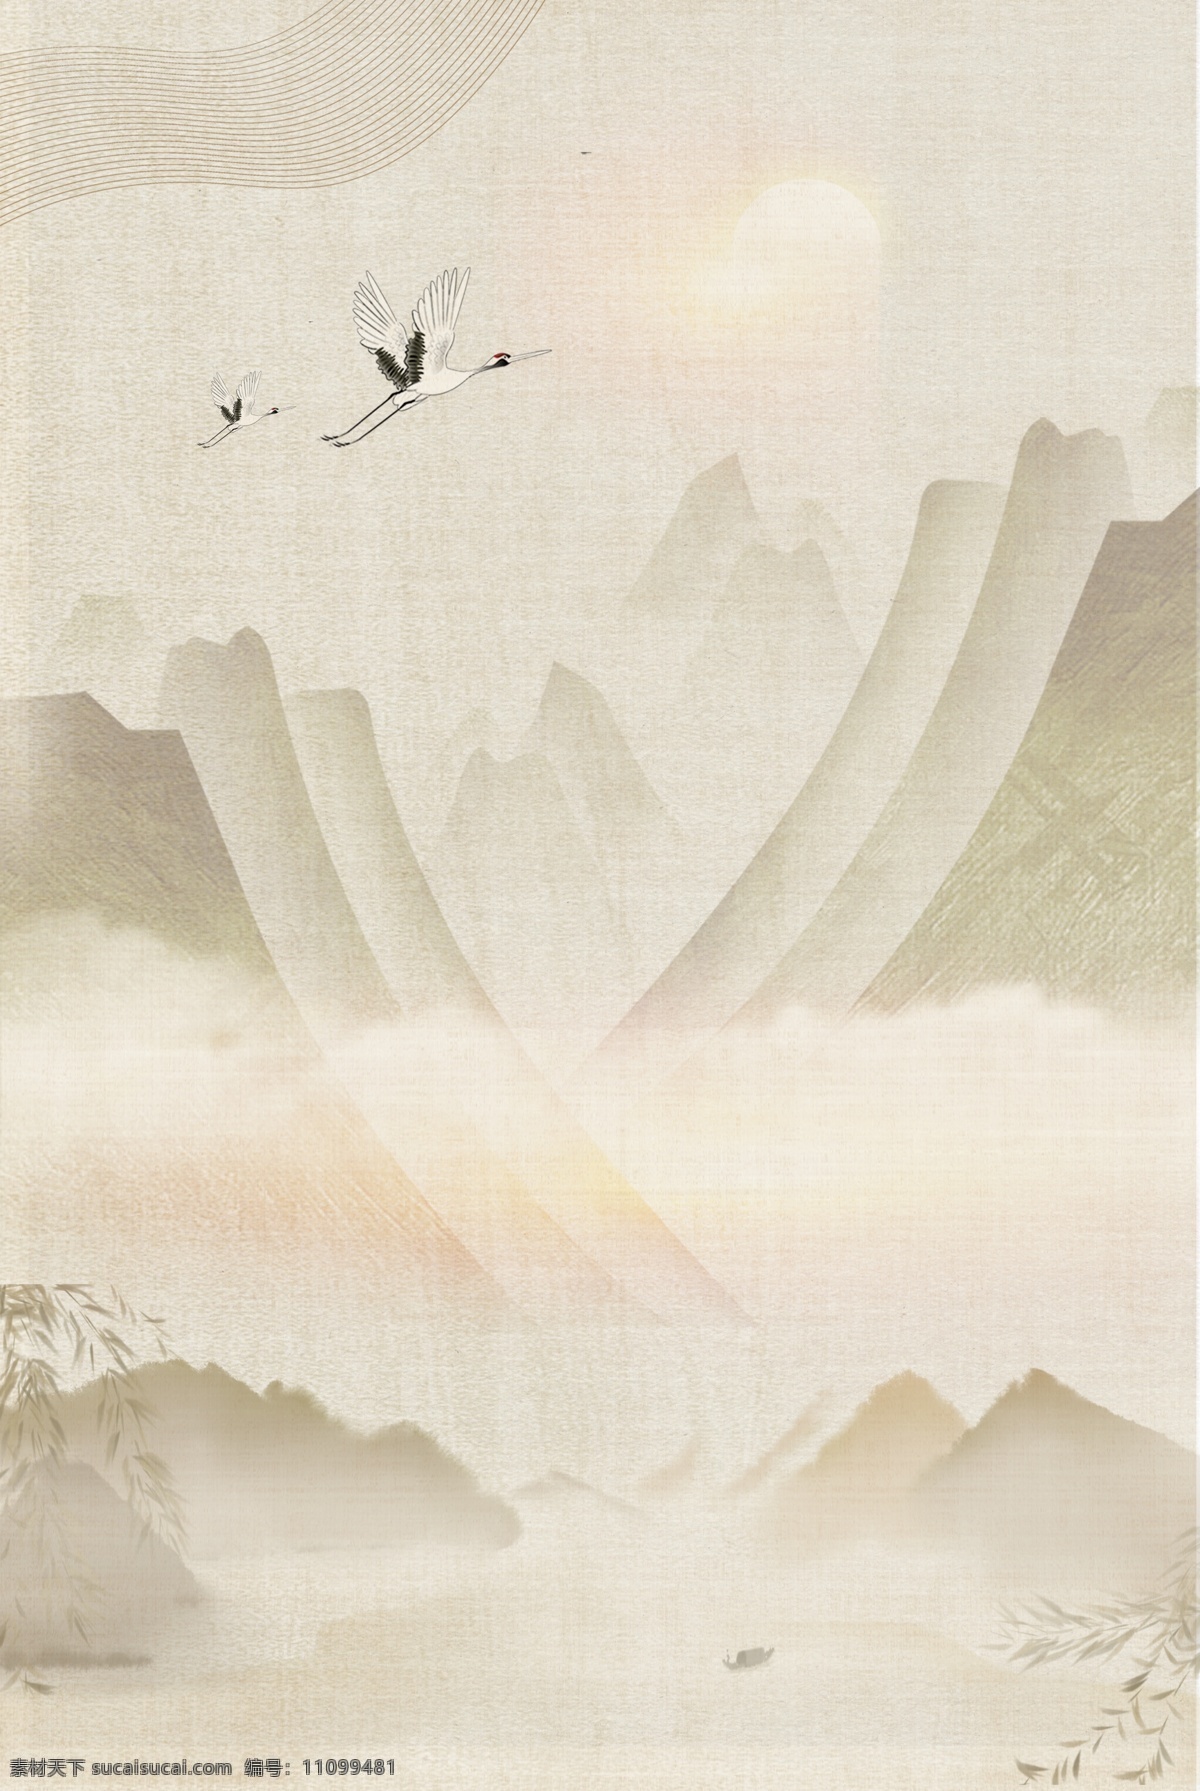 典雅 手绘 渐变 古风 海报 背景 复古 中国风 文艺 清新 质感 纹理 水墨 质朴 飞鹤